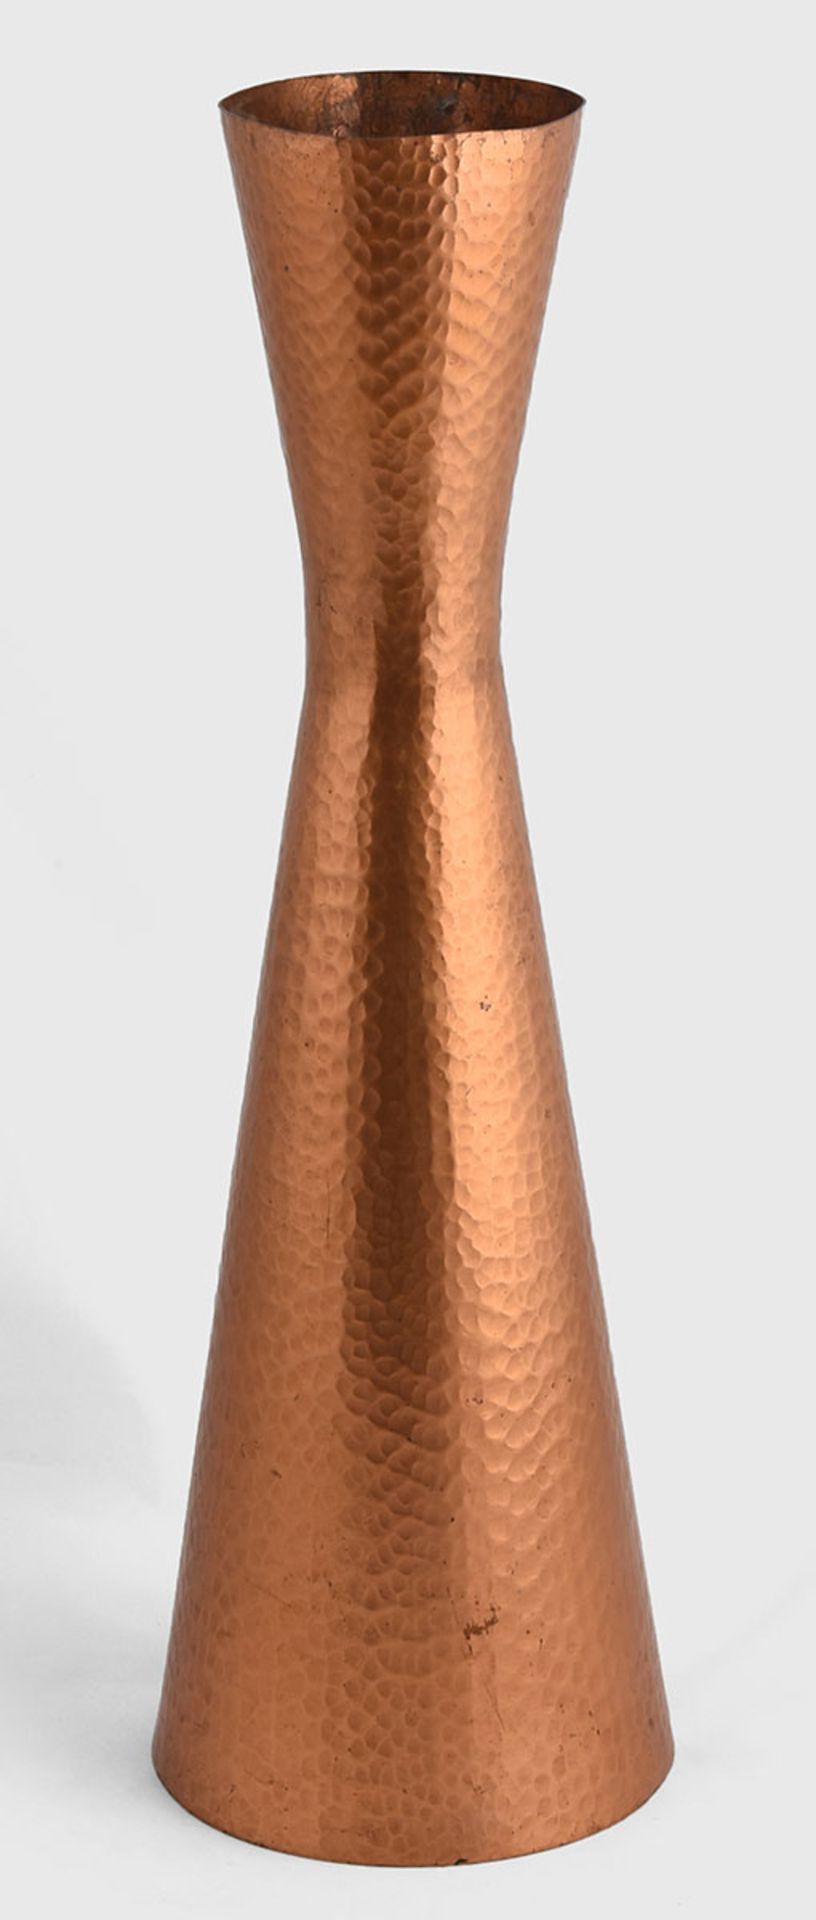 Große Vase Wall Metallkunst, schlanker konischer Korpus, taillierter Halsbereich mit hoher - Bild 2 aus 3